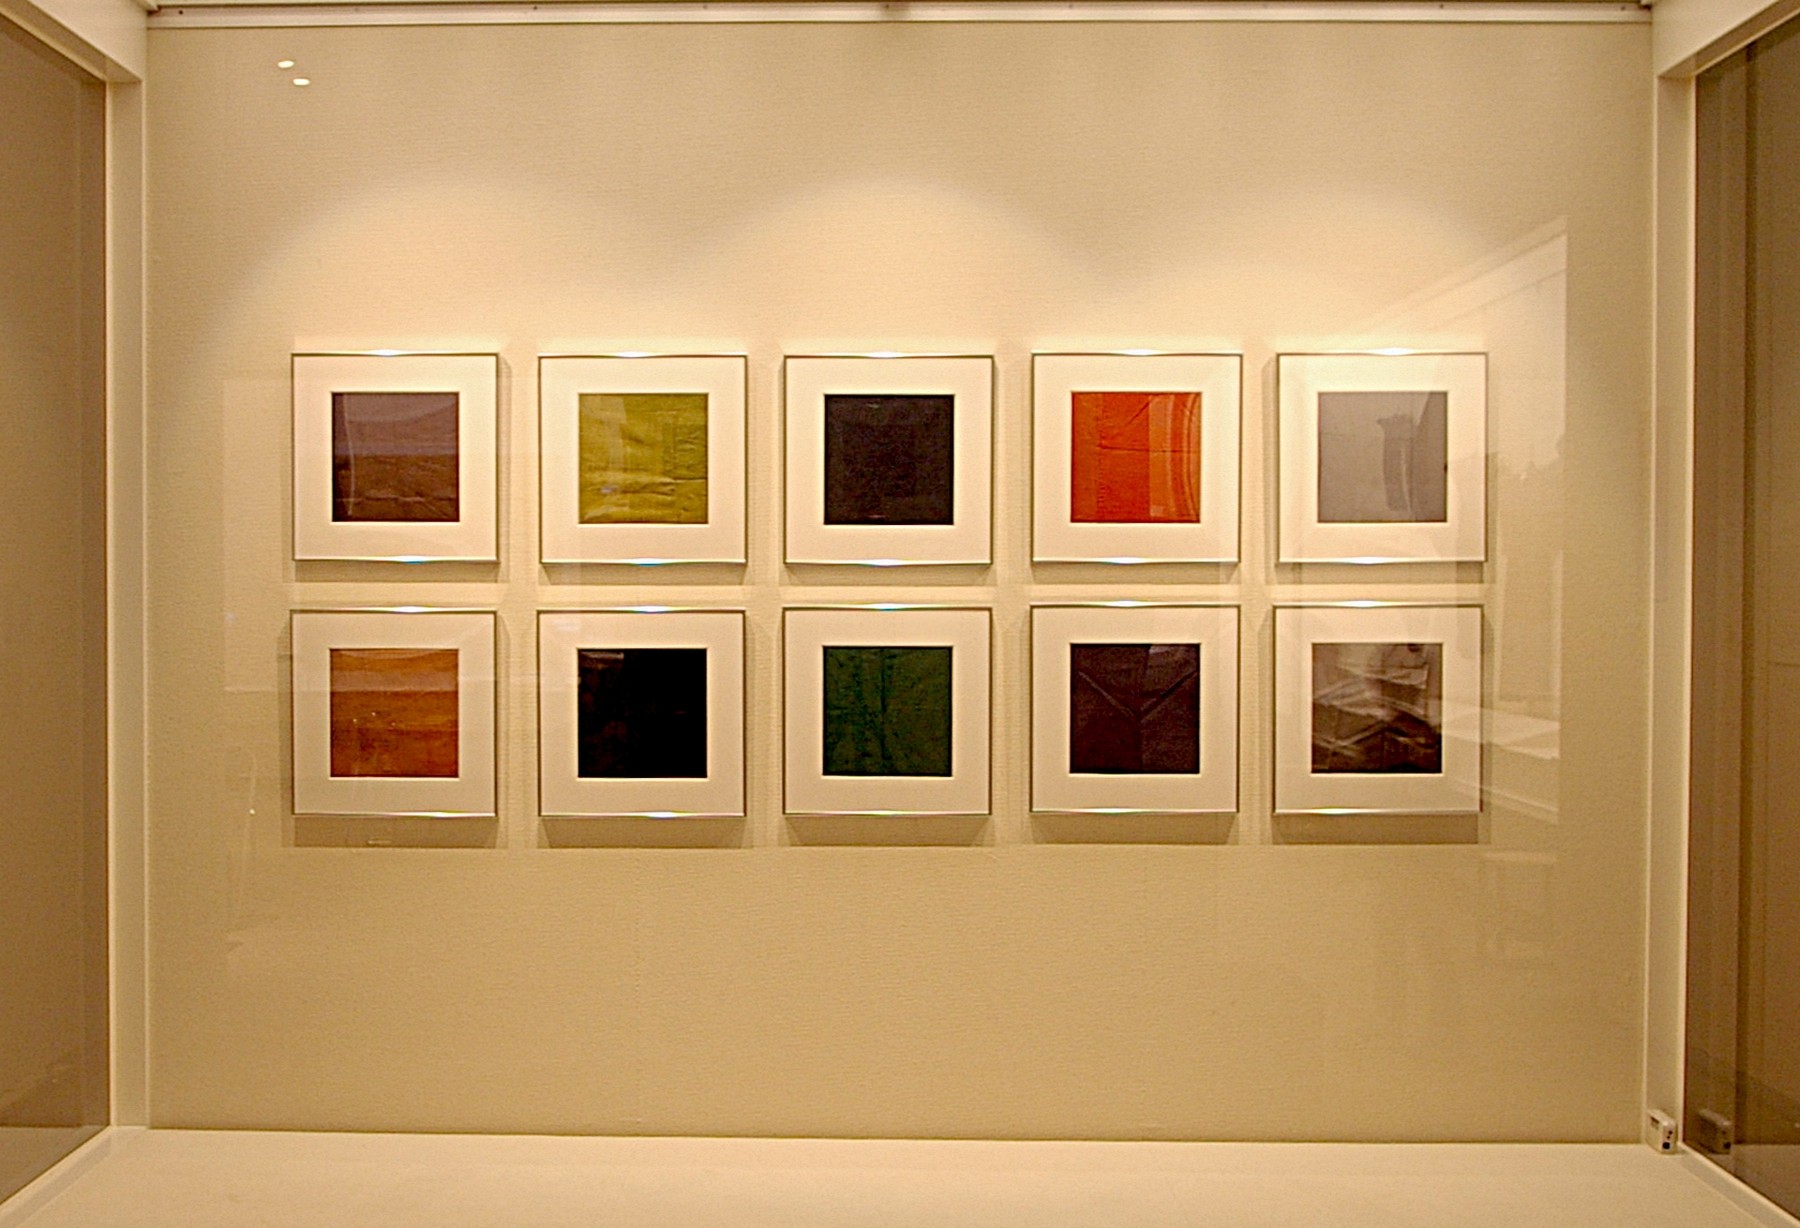 「ひきだす」と題した活動展示収蔵品展（2010年）で「はぎれ」の試験的な展示を行う。生活文化史の資料である「はぎれ」を色彩に着目した試み。